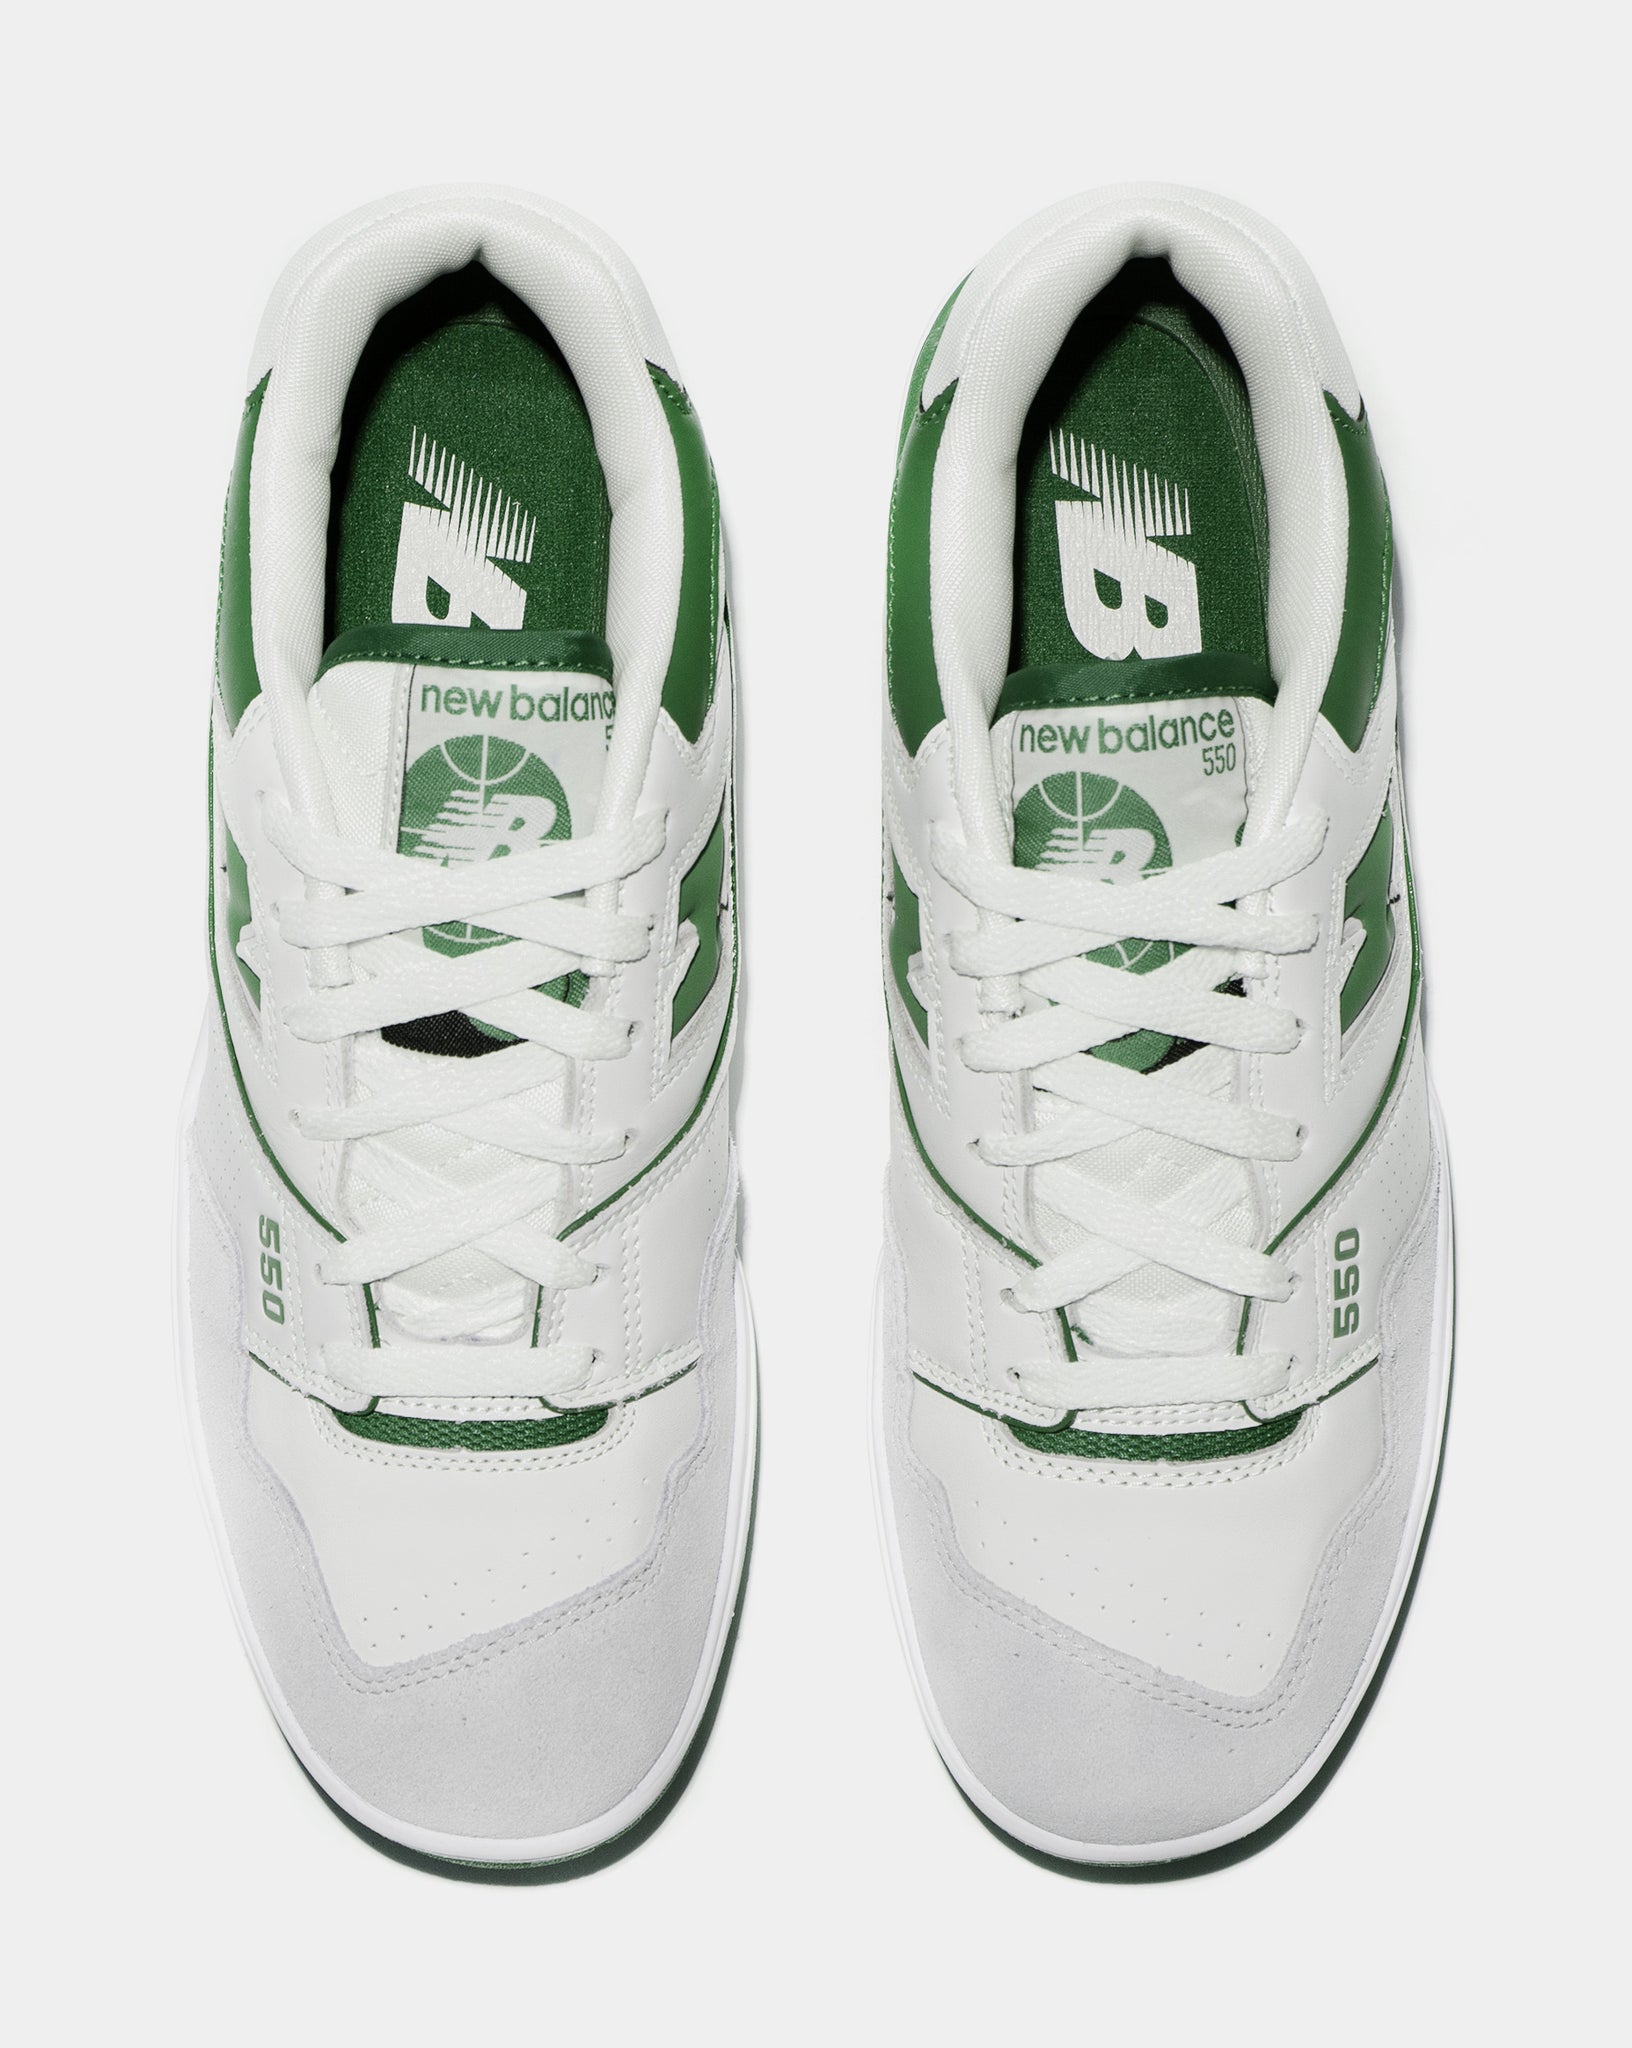 Unisex New Balance 550 White / Green Sneakers on Brubaker Store